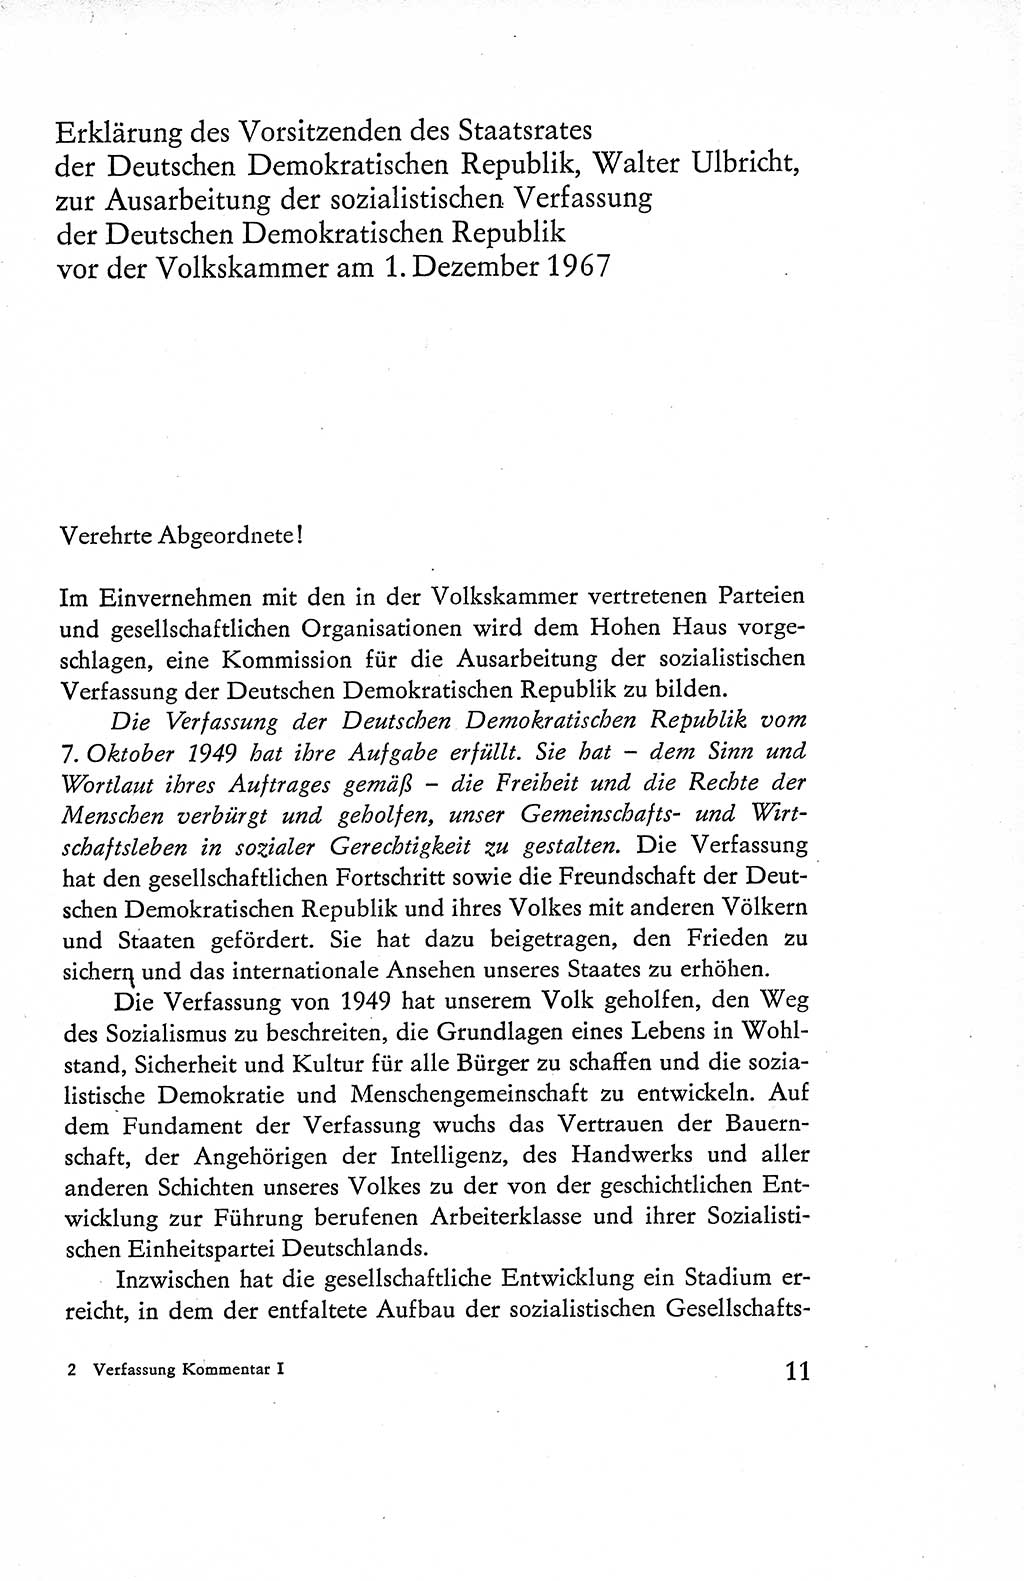 Verfassung der Deutschen Demokratischen Republik (DDR), Dokumente, Kommentar 1969, Band 1, Seite 11 (Verf. DDR Dok. Komm. 1969, Bd. 1, S. 11)